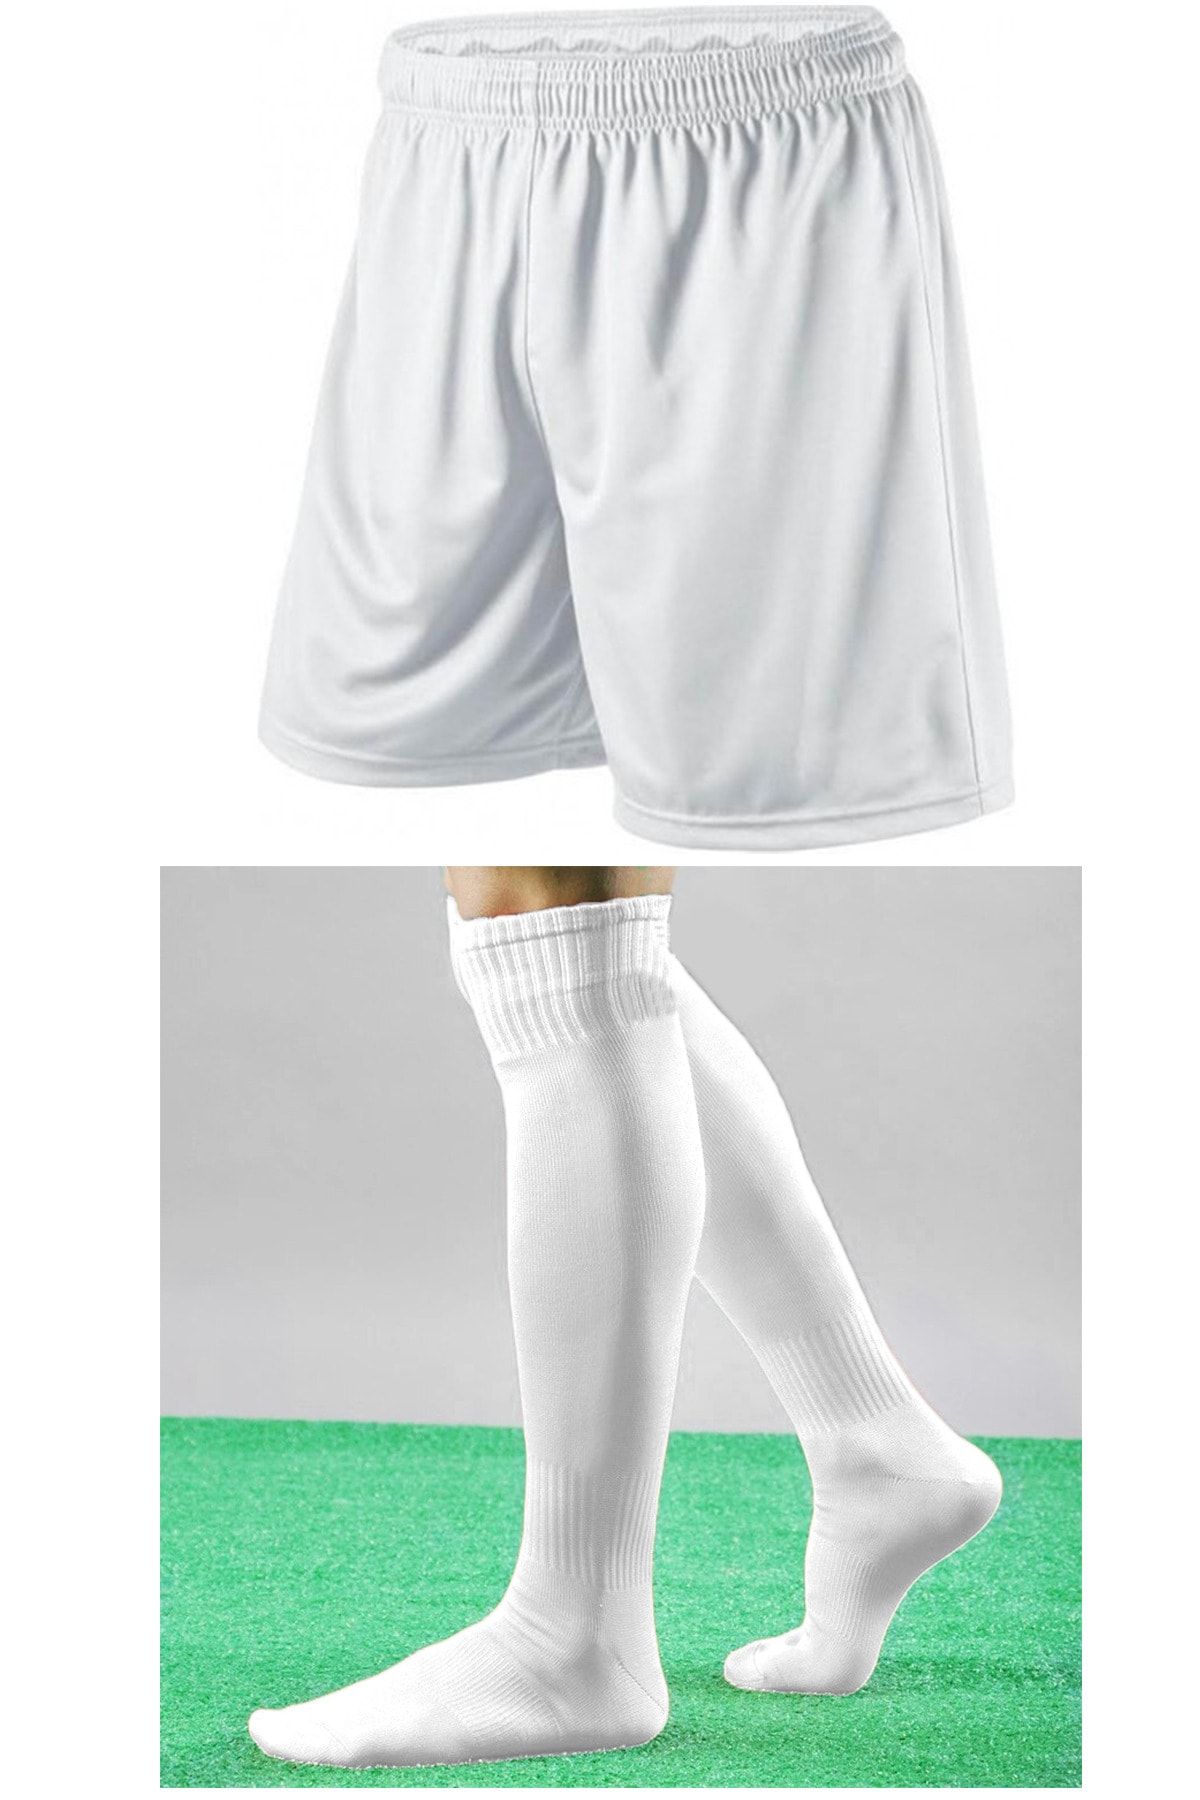 GAZELMANYA Futbol Şortu Ve Futbol Çorabı Seti Sporcu Şortu Ve Çorabı Şort Ve Çorap Futbol Şort Çorap Seti